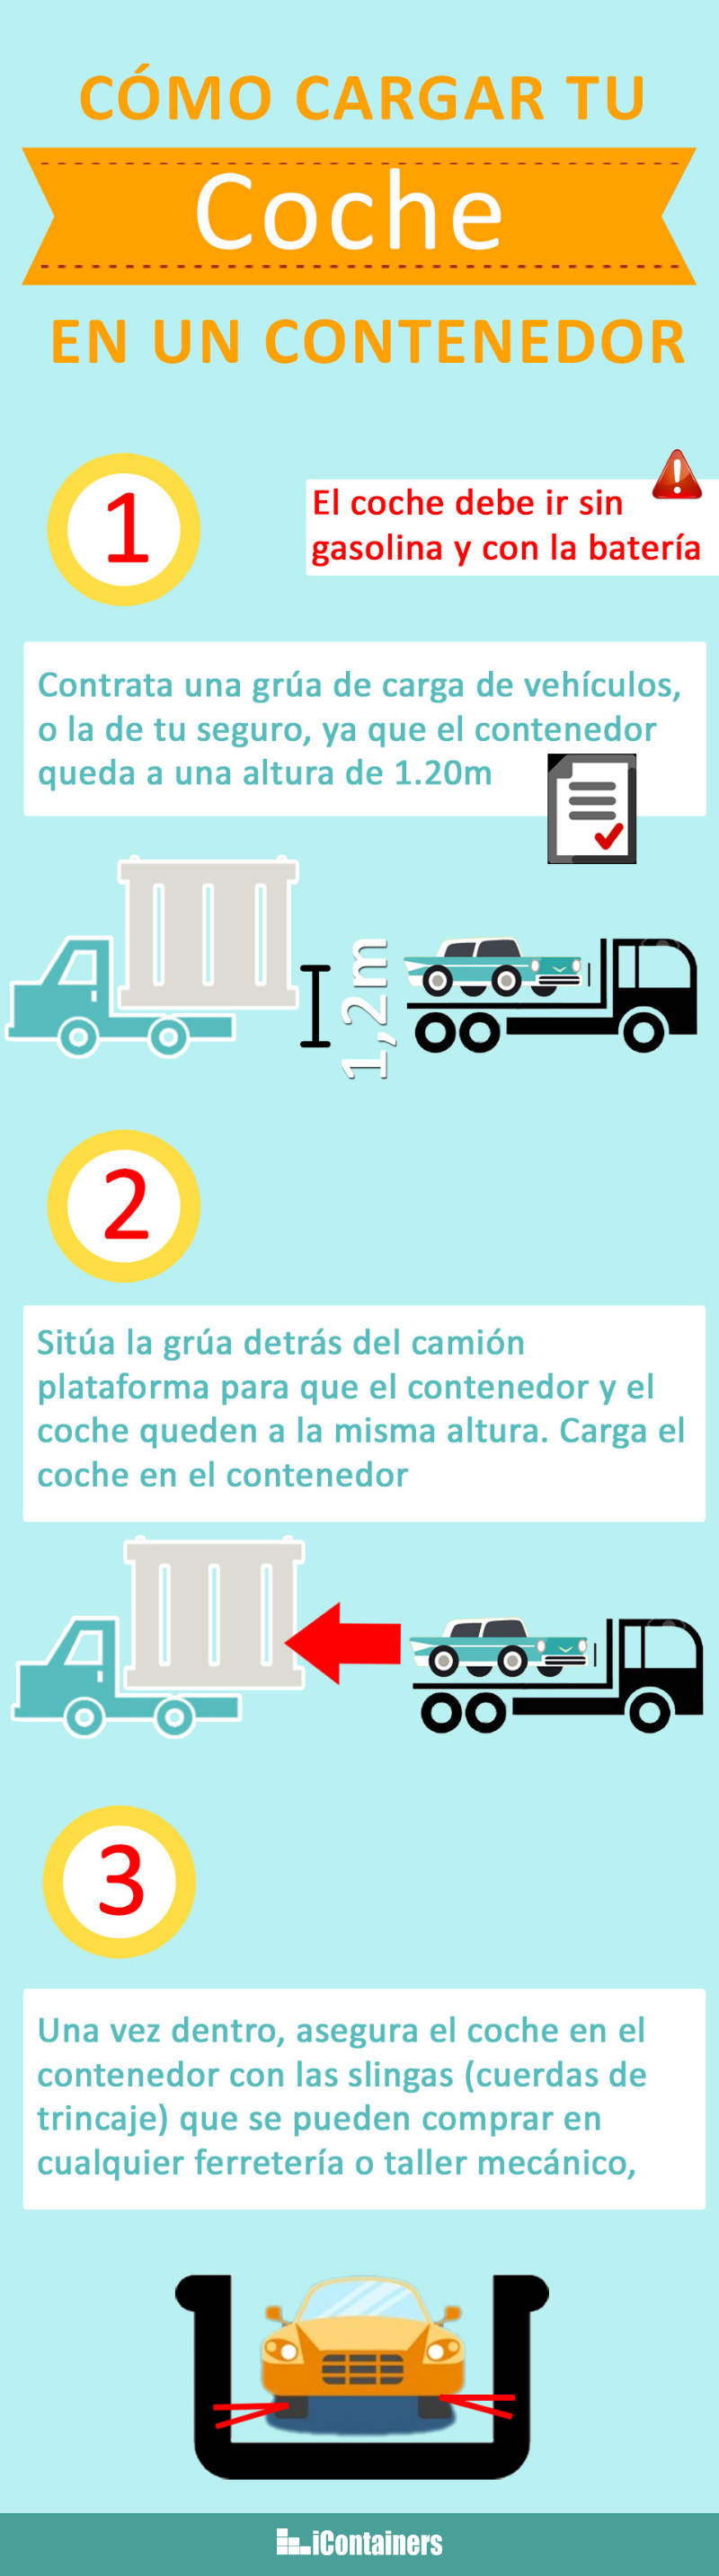 infografia-mudanzas-coche.png